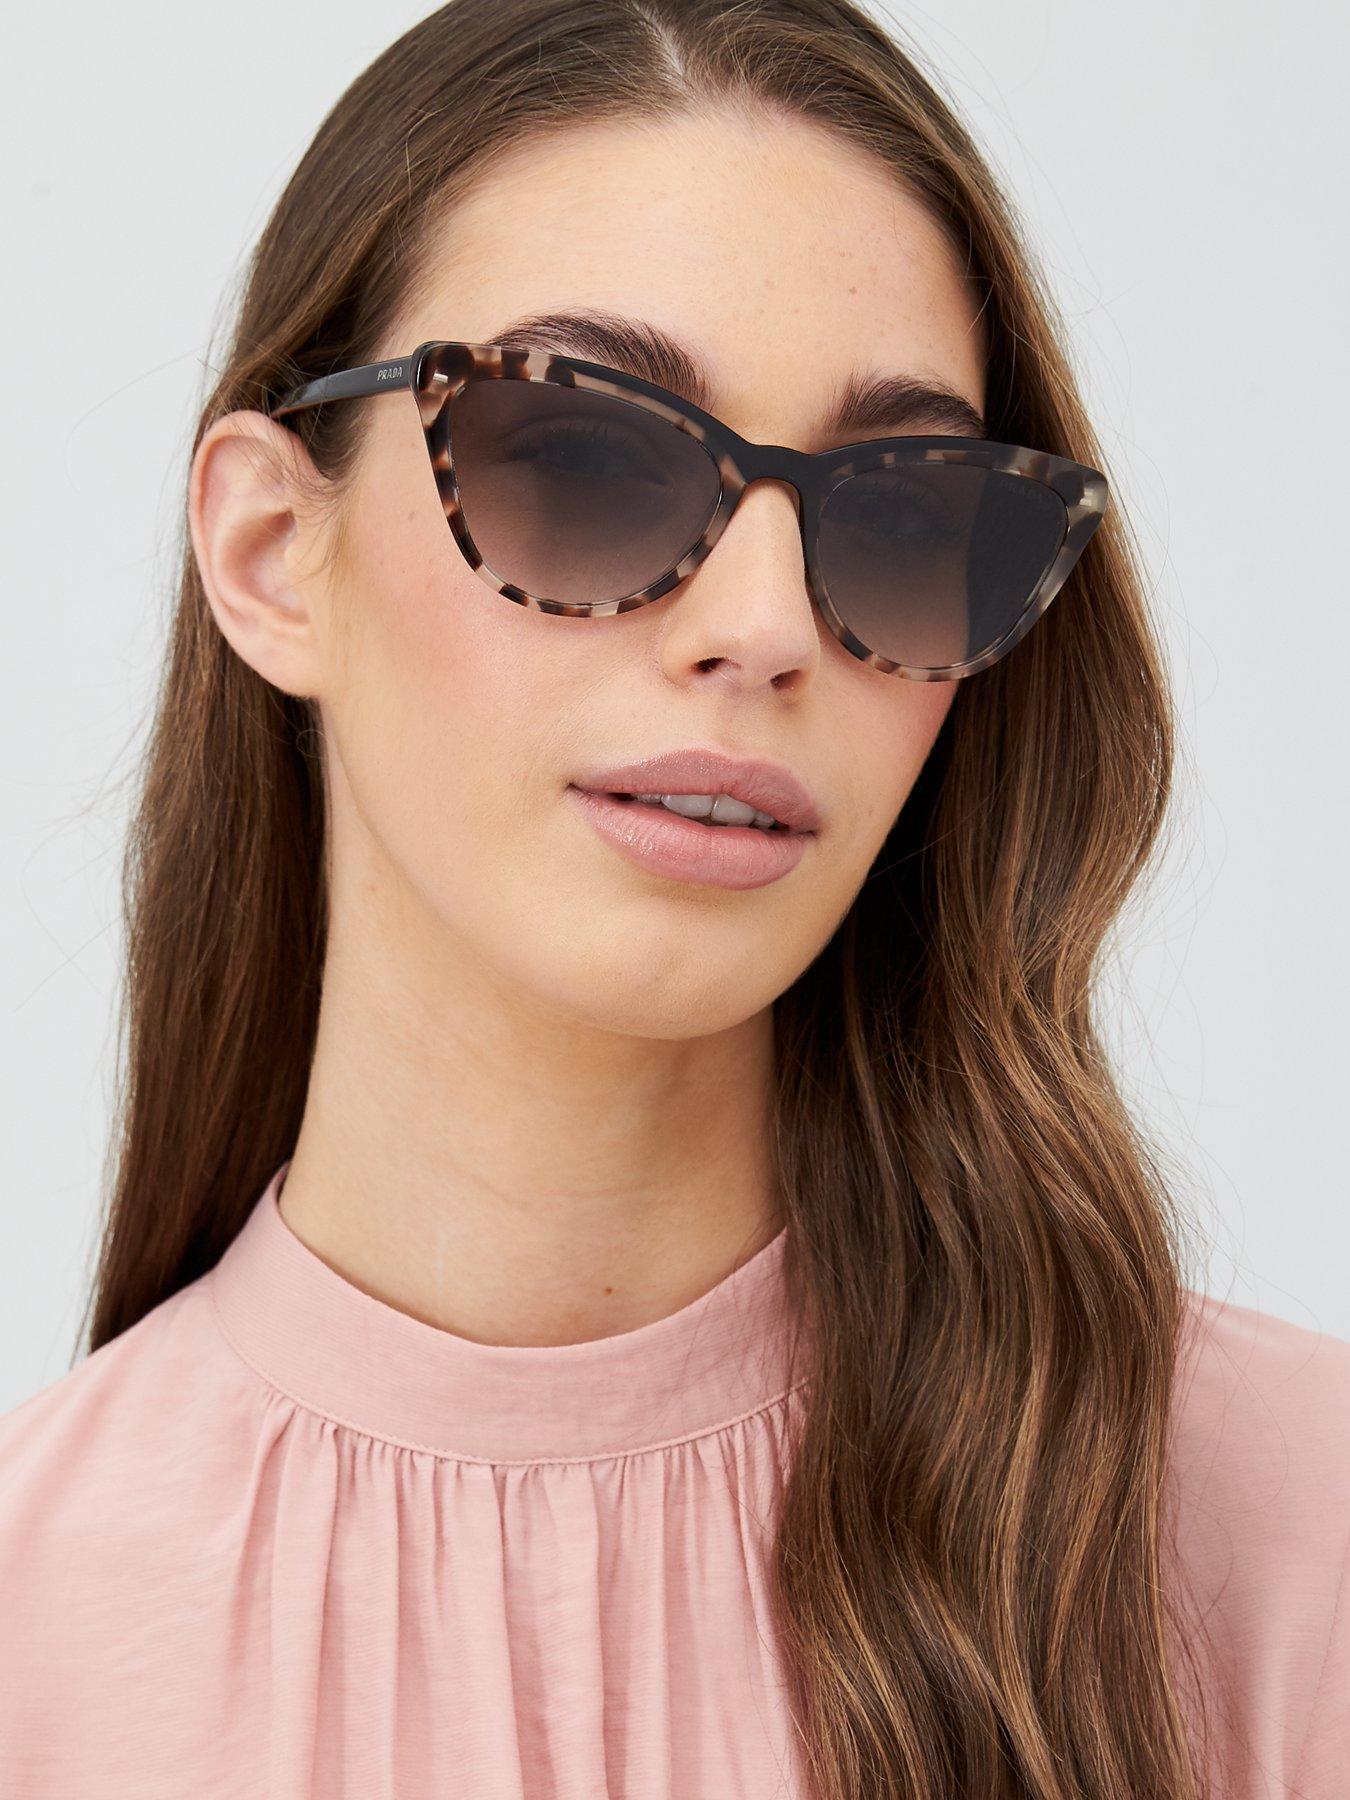 prada women's cat eye sunglasses